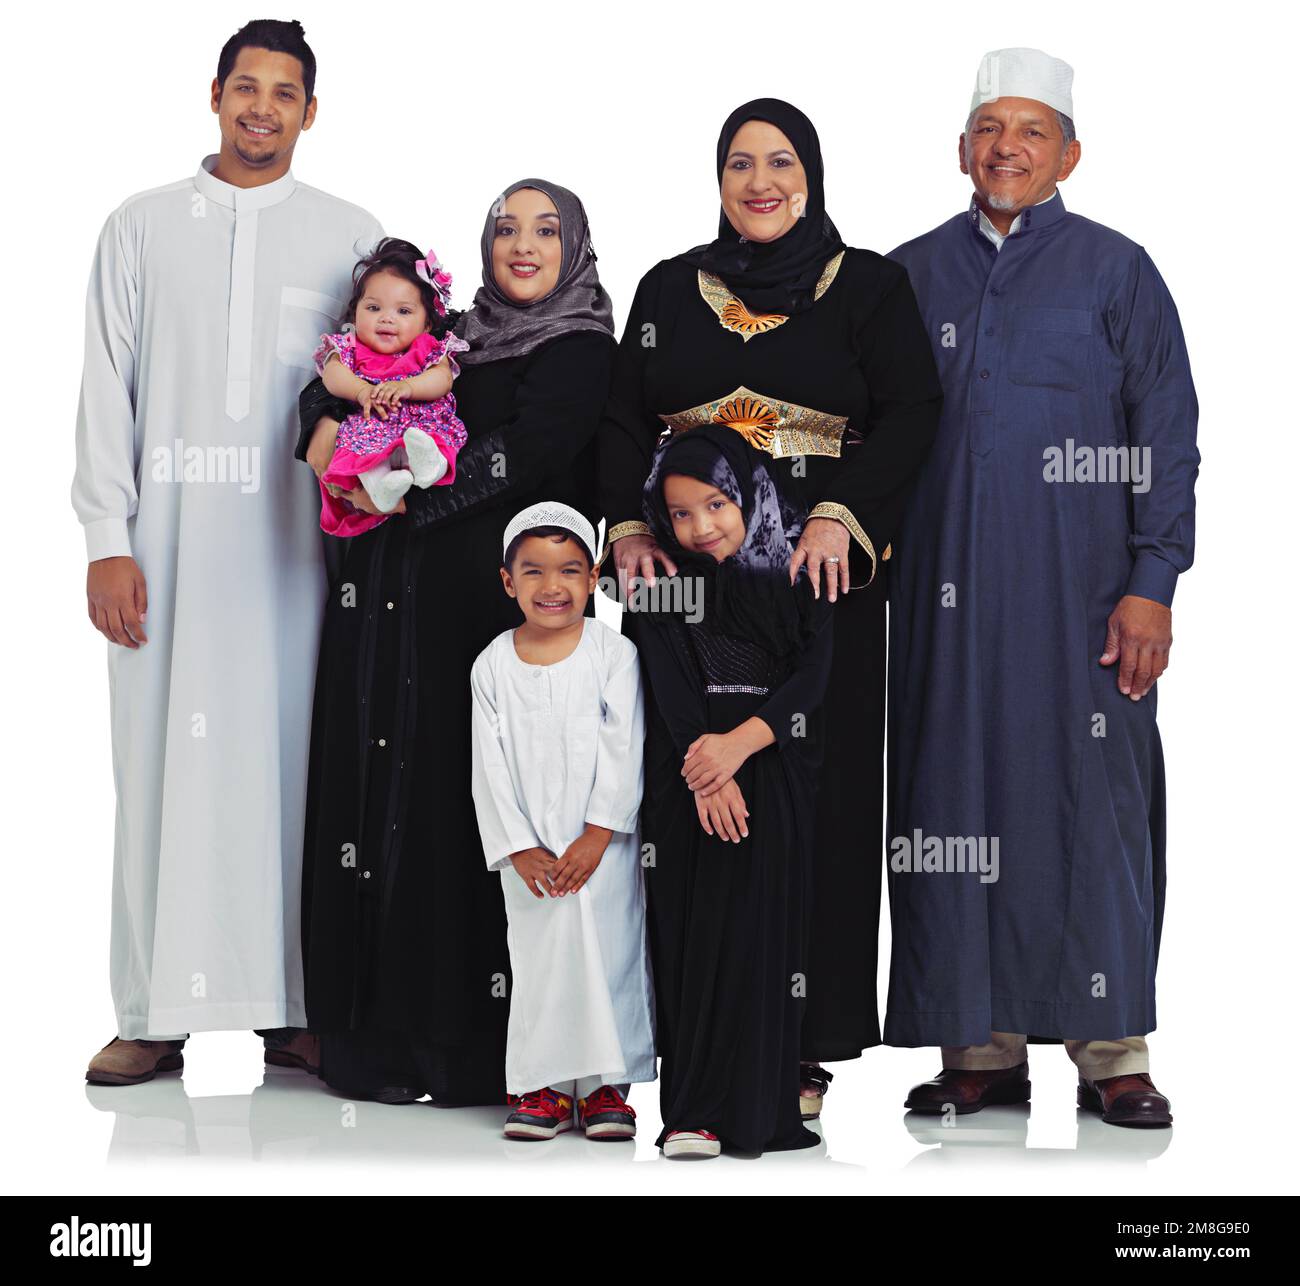 Grande famille, portrait heureux et enfants, parents et grands-parents ensemble pour la religion de l'Islam eid. Des femmes, des hommes et des enfants arabes heureux de la culture islamique Banque D'Images